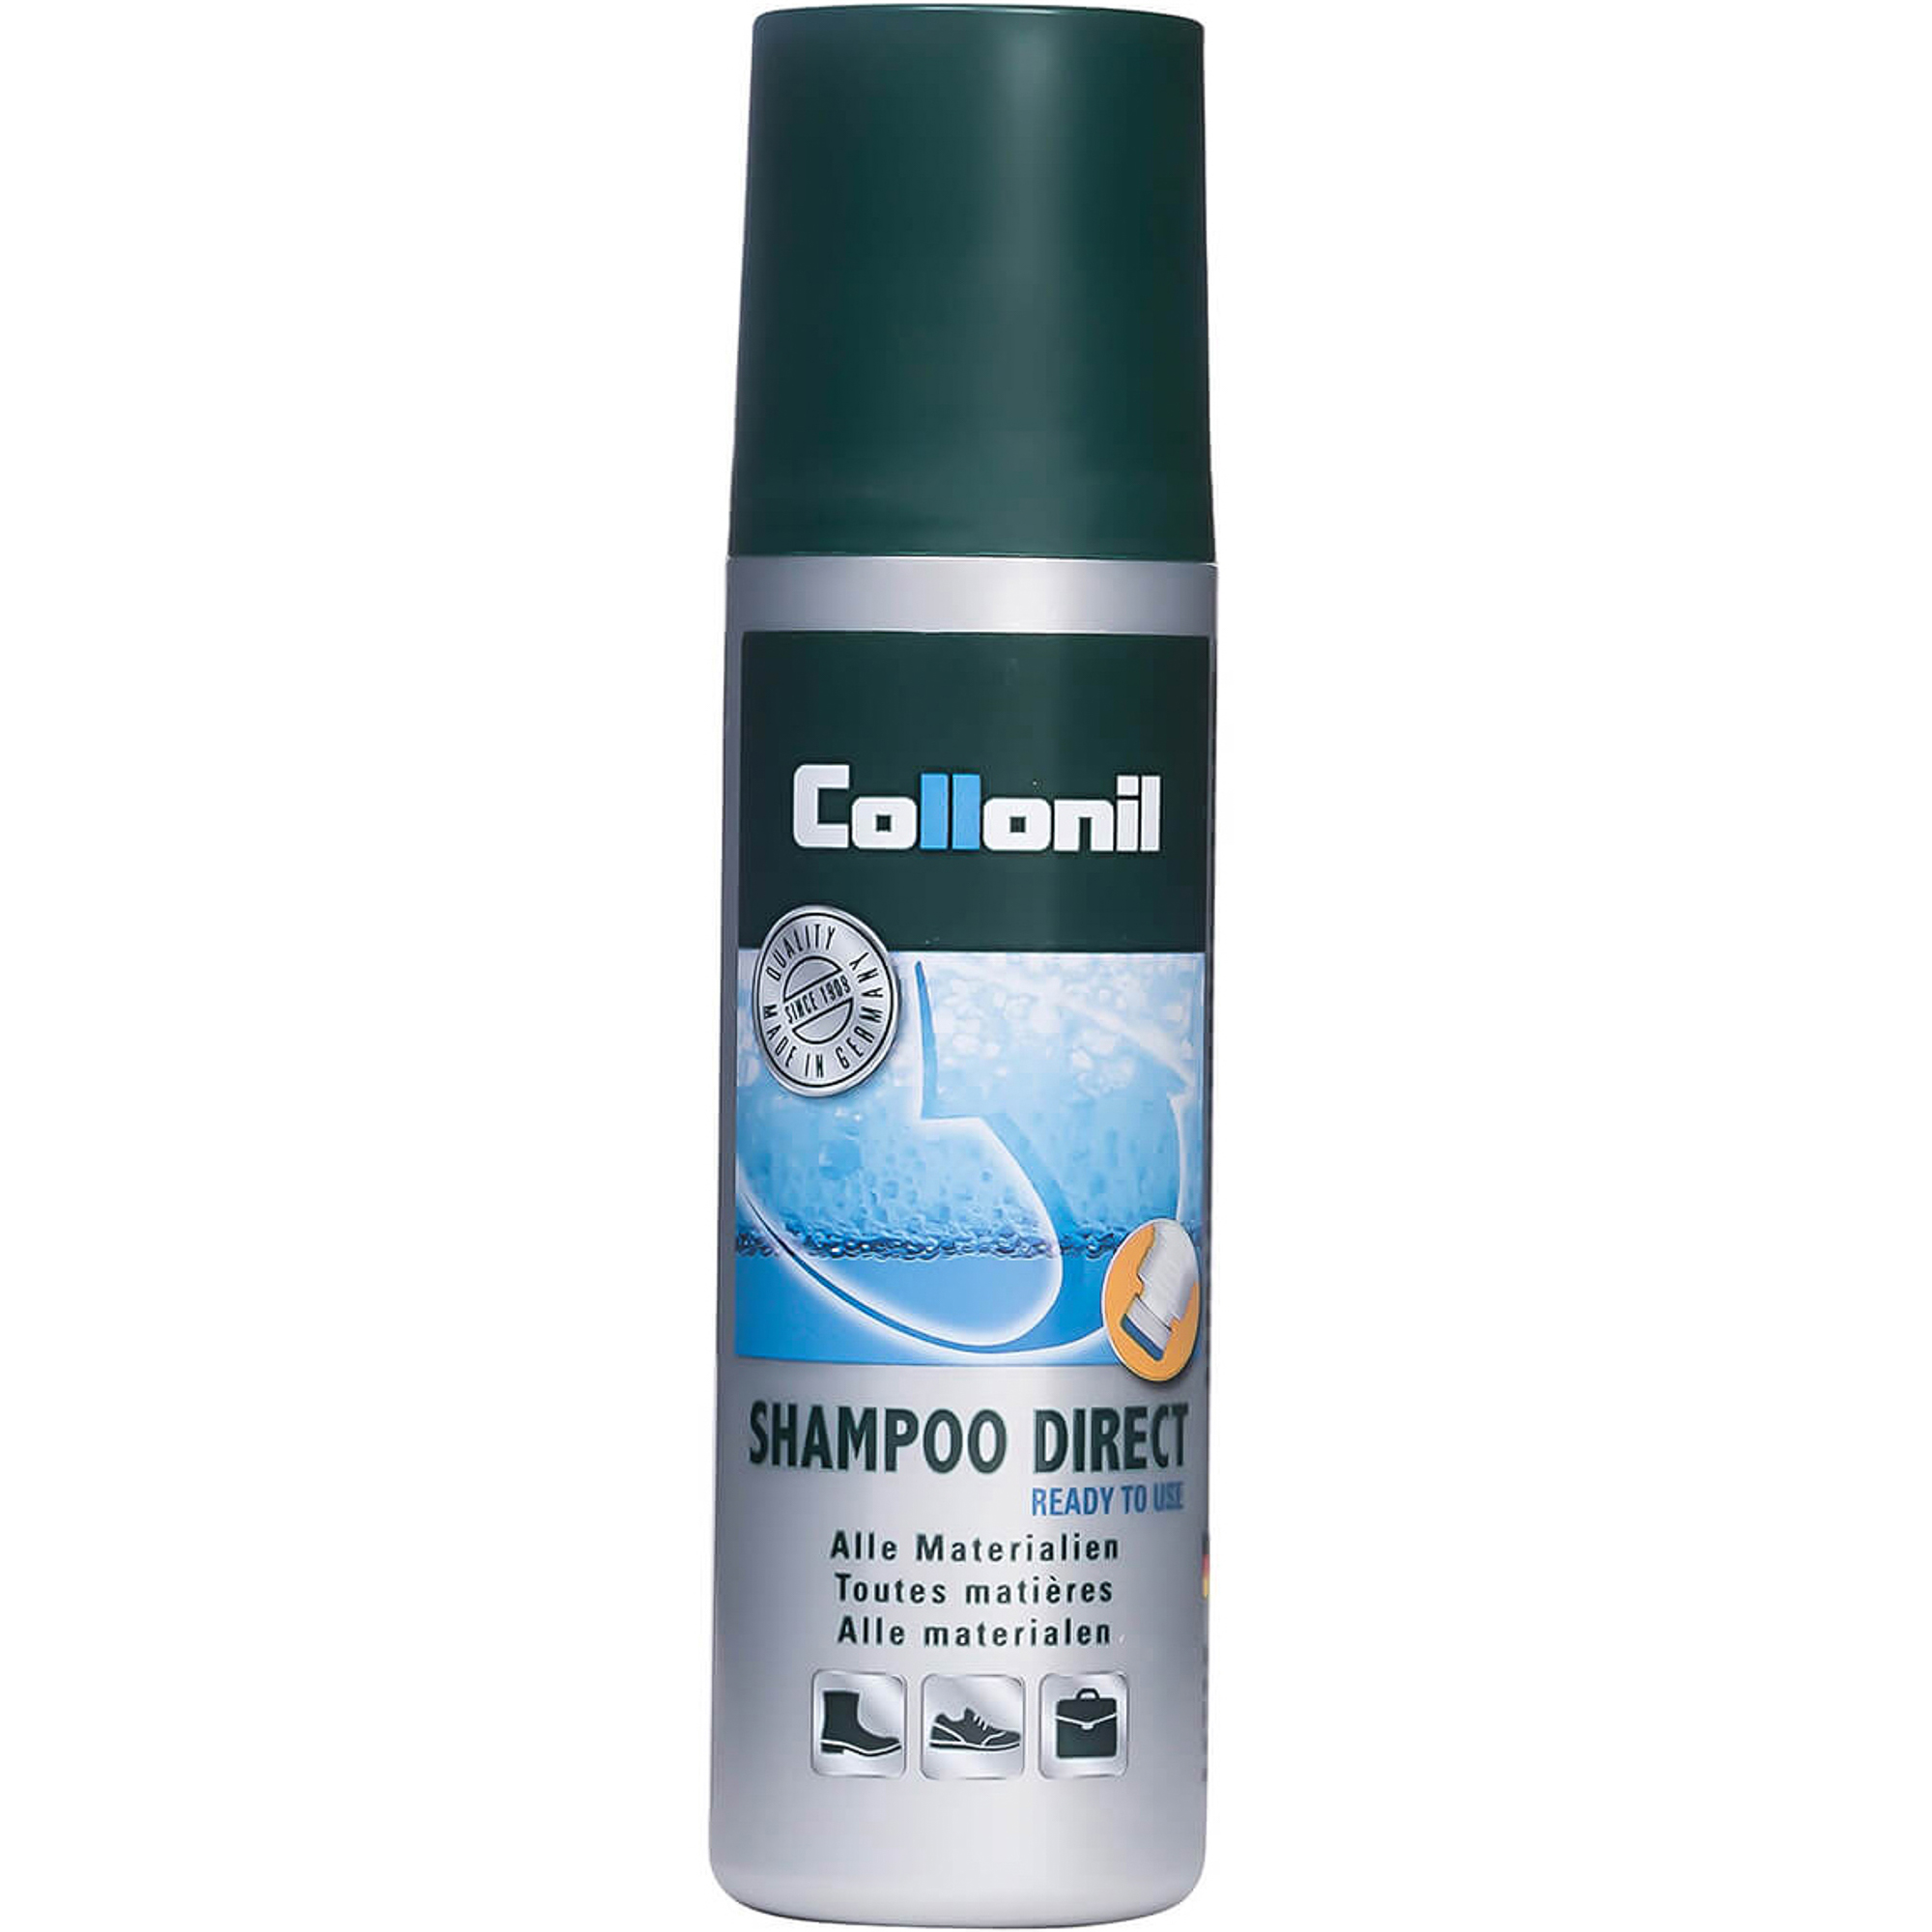 Чистящий шампунь Collonil Direct Shampoo 100 мл спрей чистящий cif ультра быстрый универсальный 500 мл